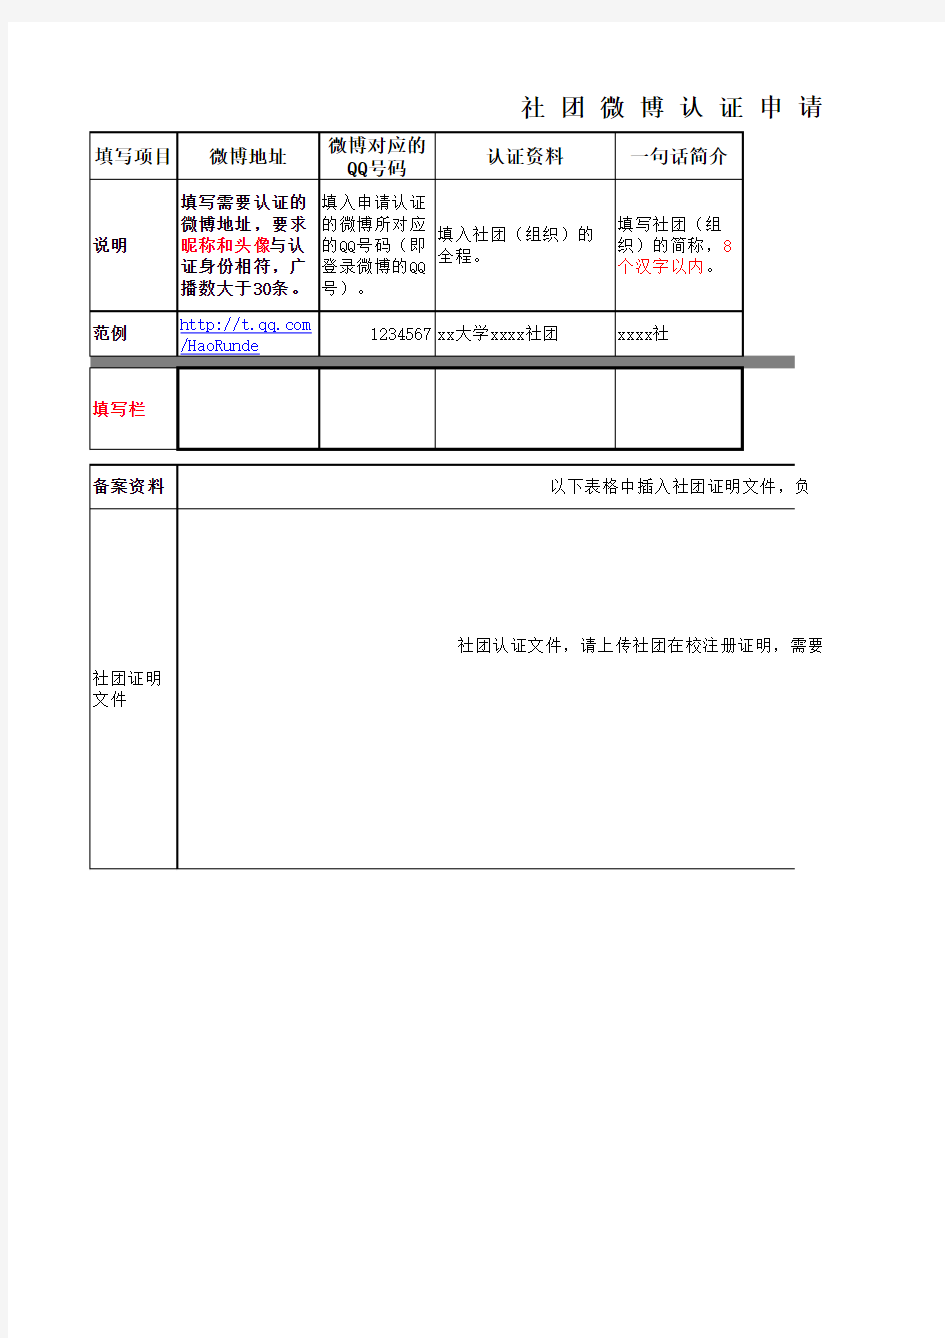 腾讯微博校园认证申请表(社团组织)-社团名称